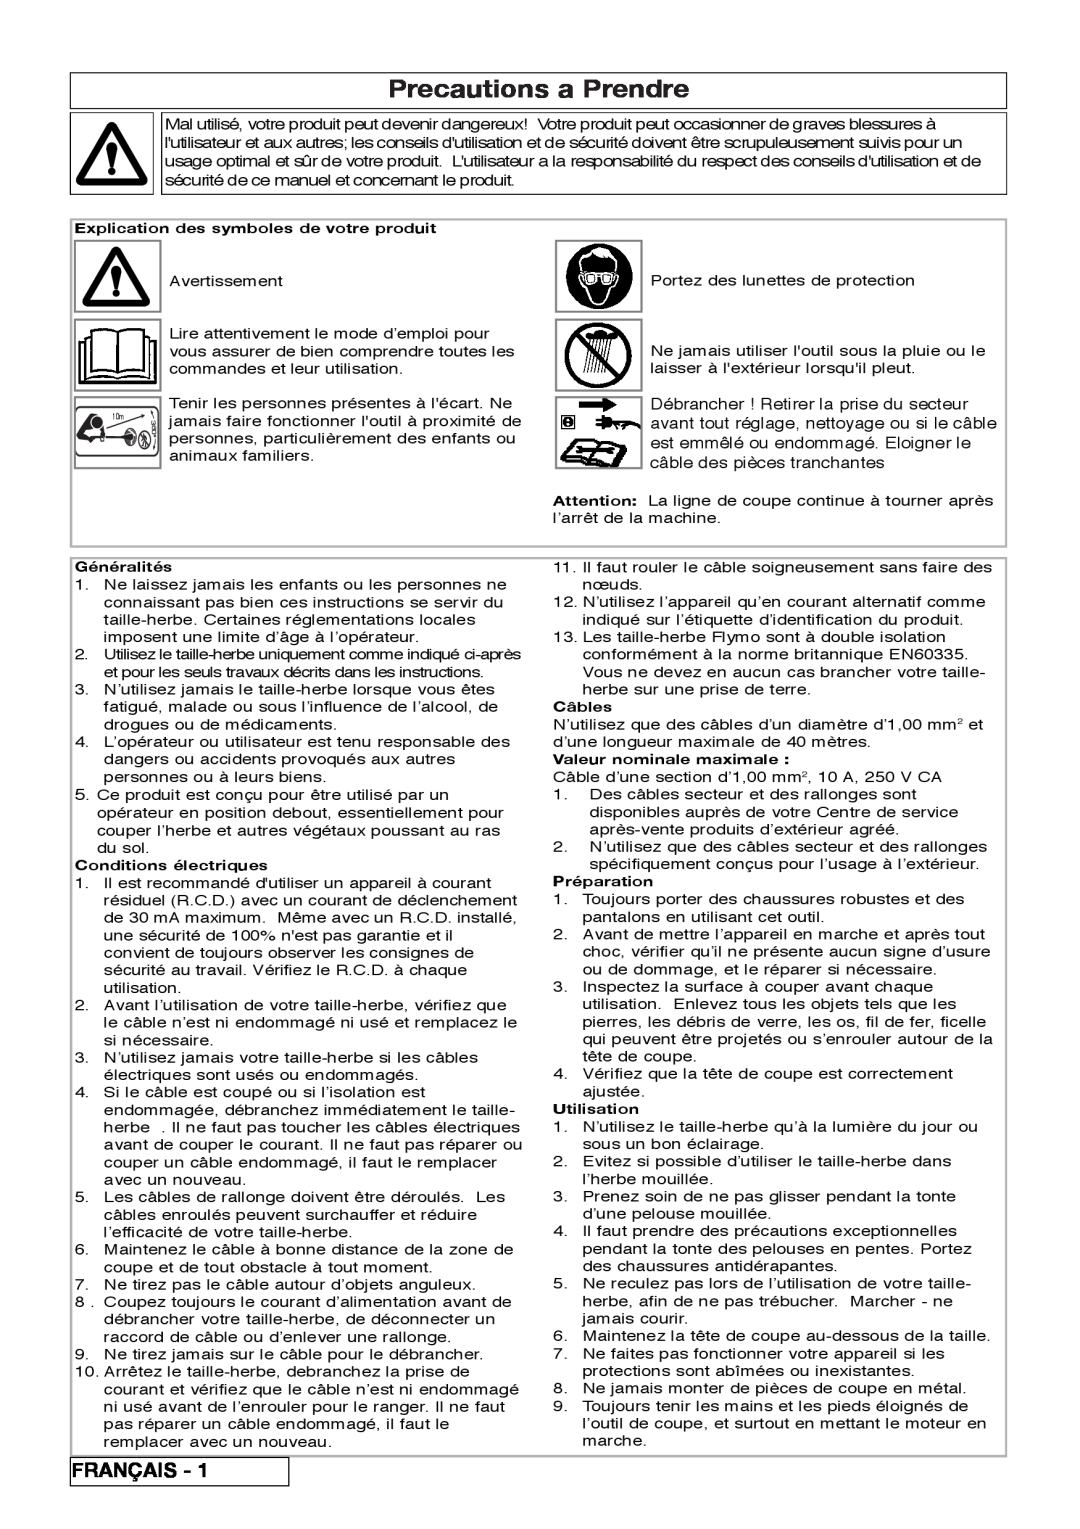 Flymo 800/1000 manual Precautions a Prendre, Français 